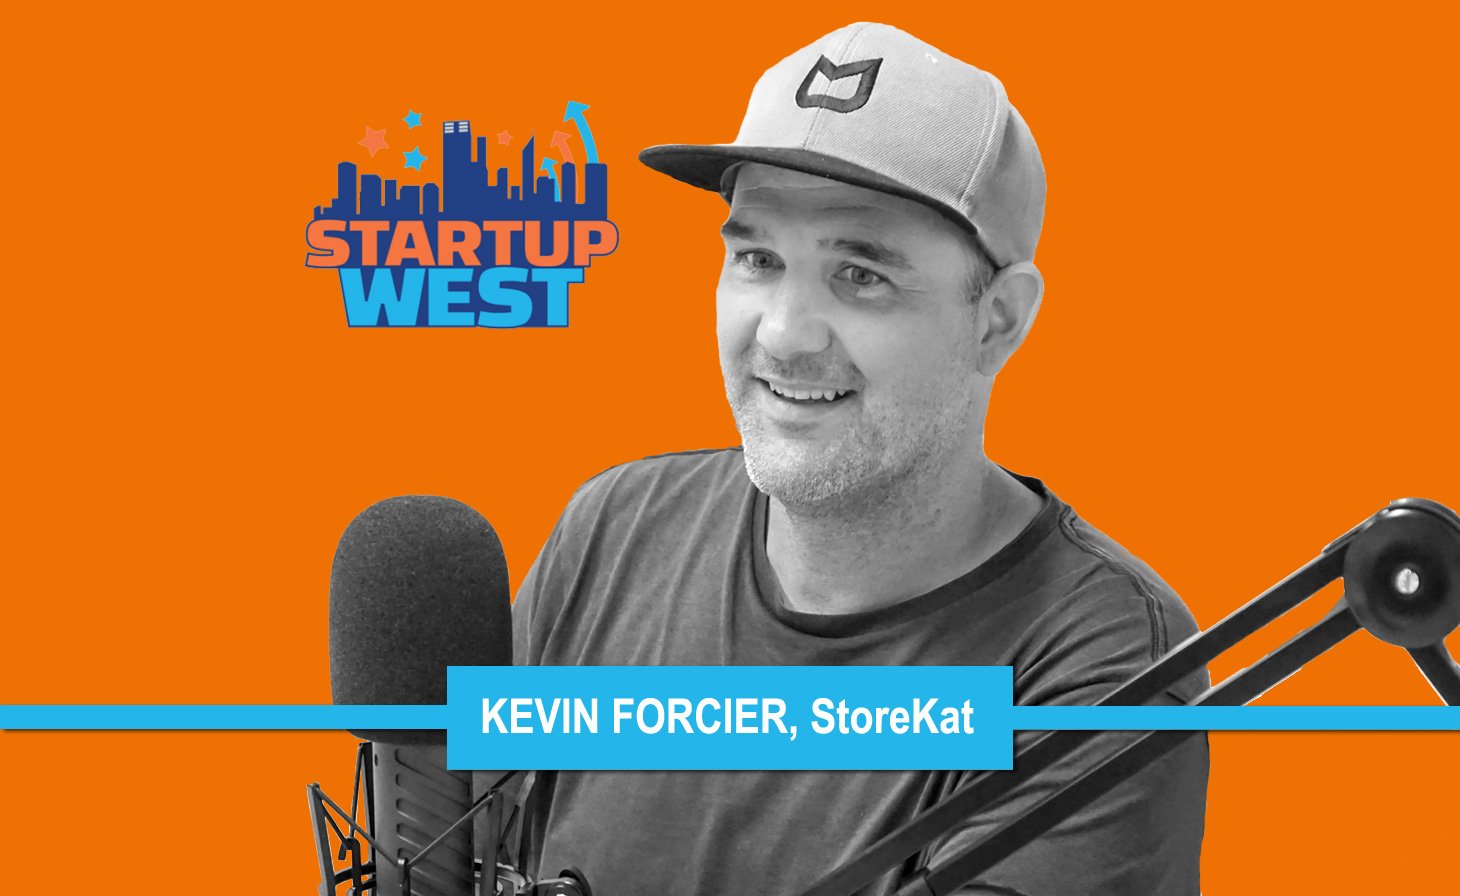 Kevin Forcier